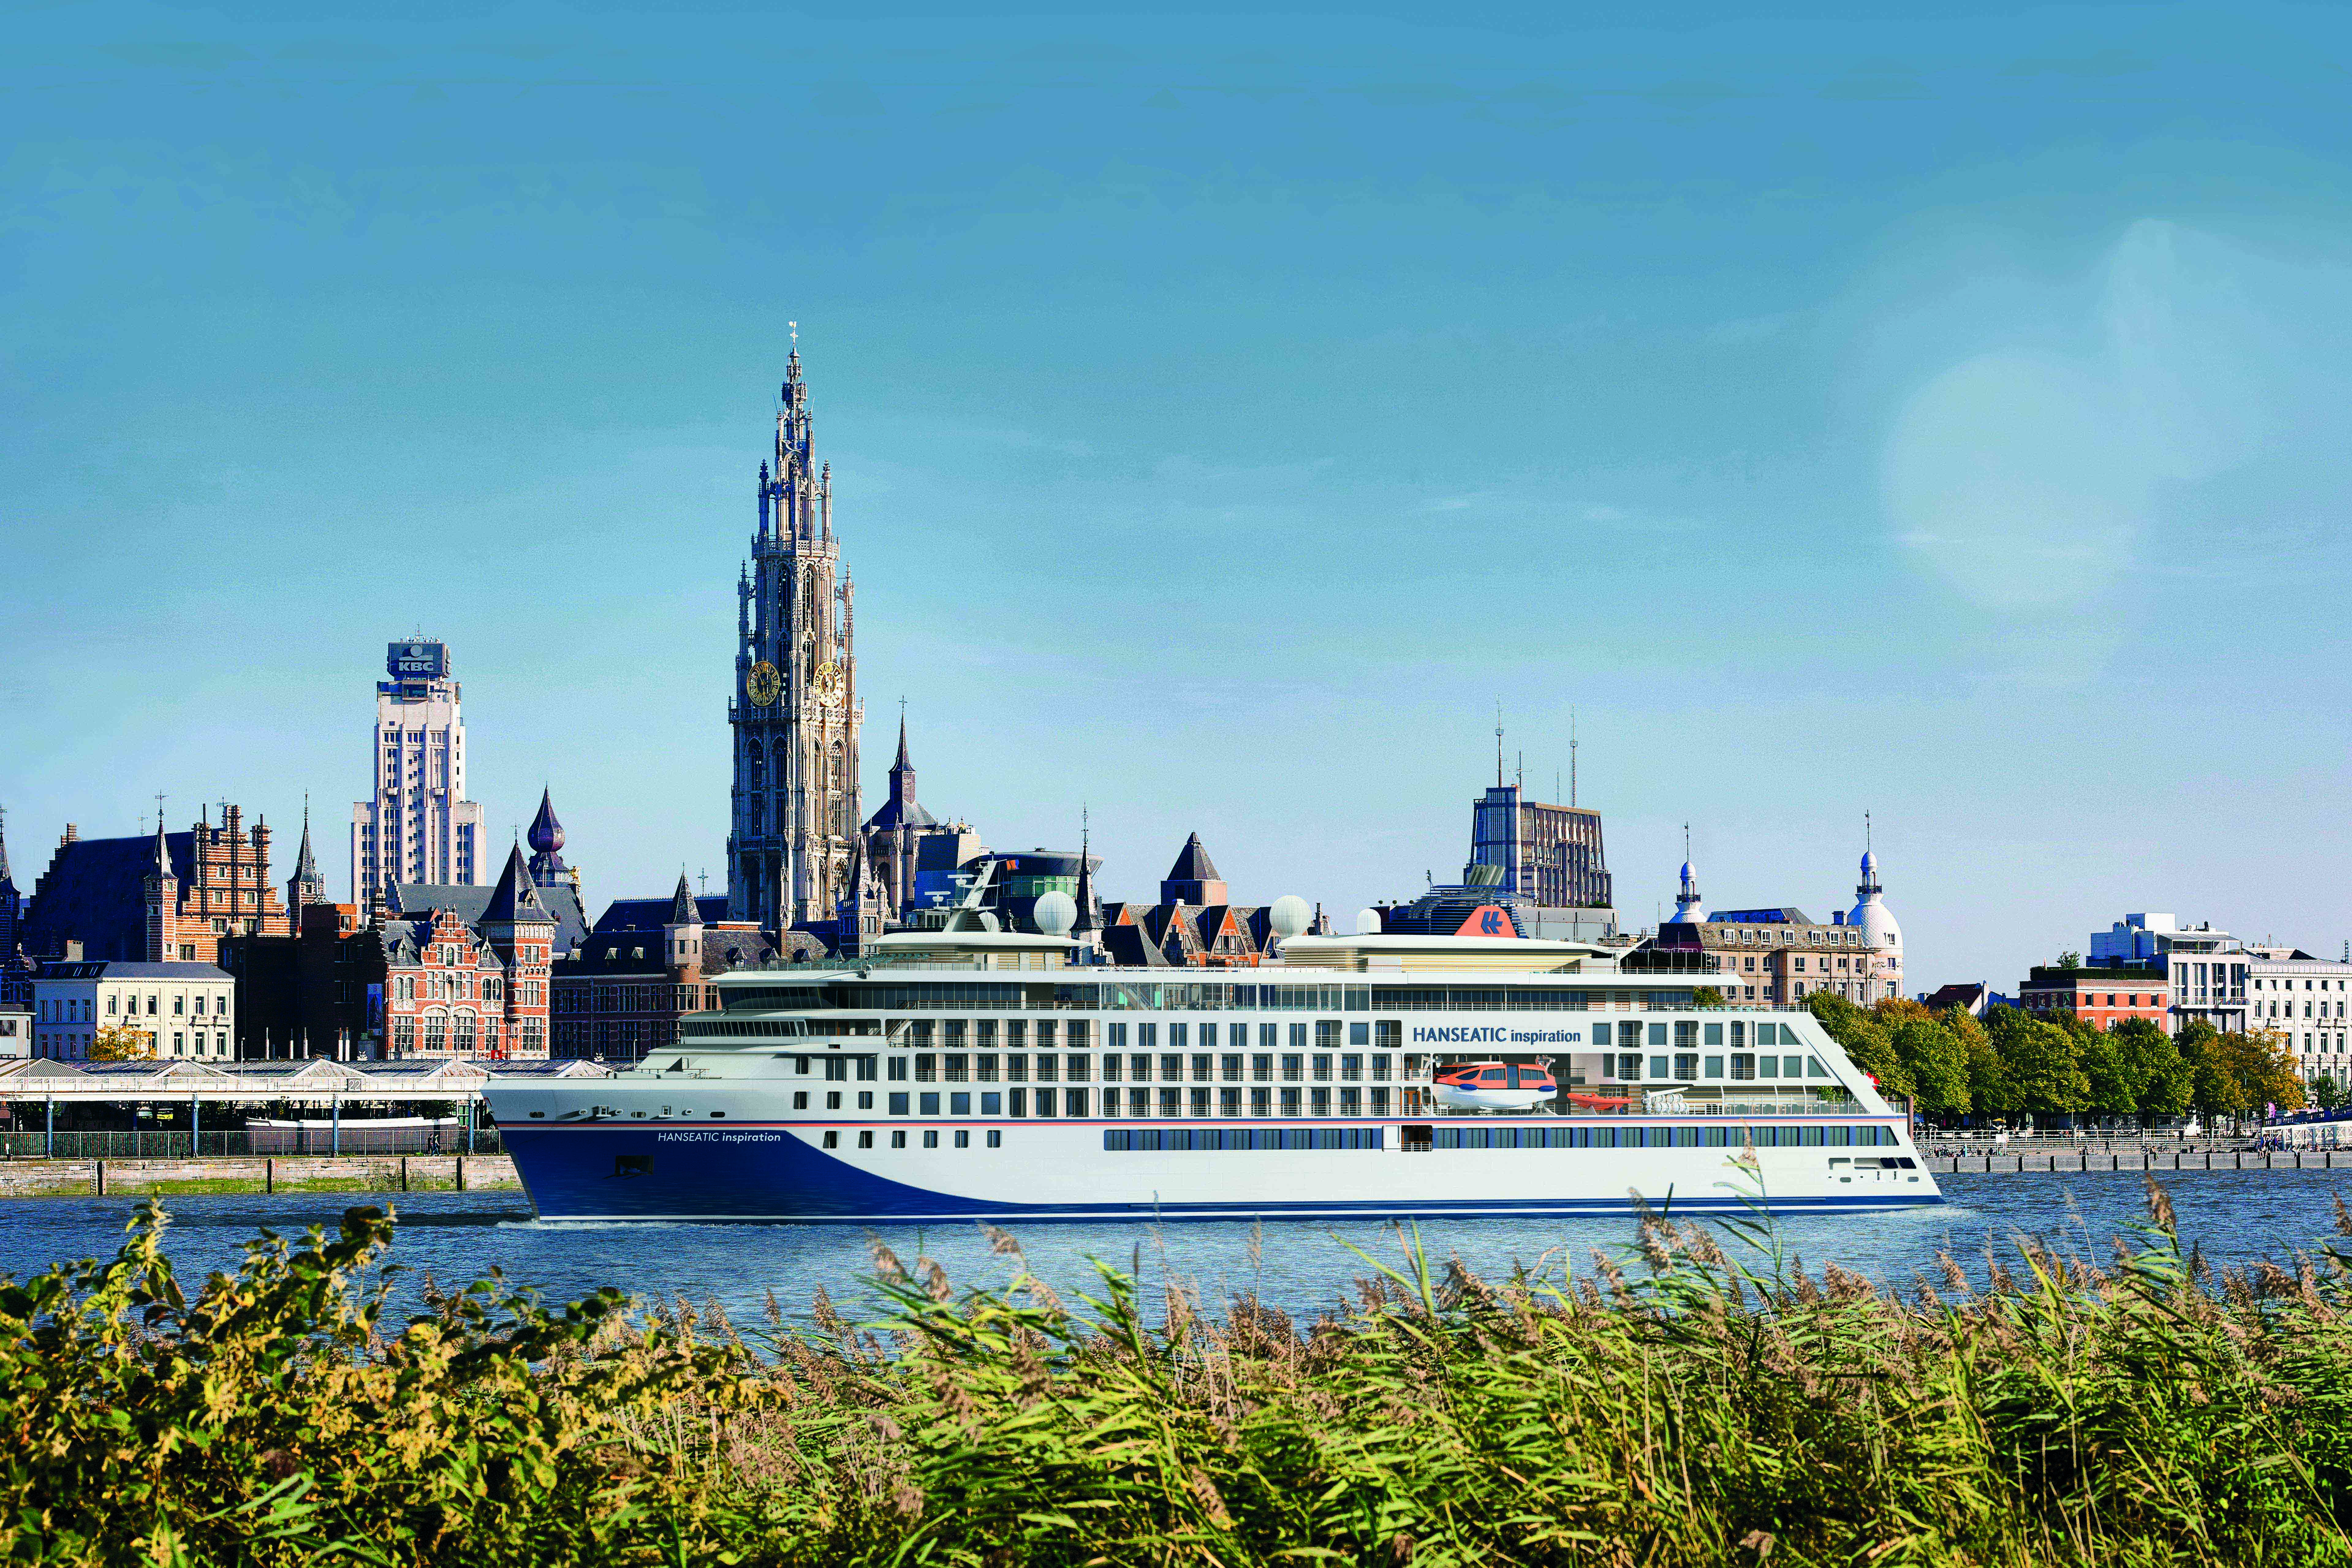 Hapag-Lloyd Cruises wird sein zweites Expeditionsschiff am 13. Oktober 2019 vor der Kulisse der belgischen Hafenstadt Antwerpen auf den Namen HANSEATICinspiration taufen. Zum ersten Mal in der Stadtgeschichte wird damit ein Kreuzfahrtschiff in Antwerpen getauft.